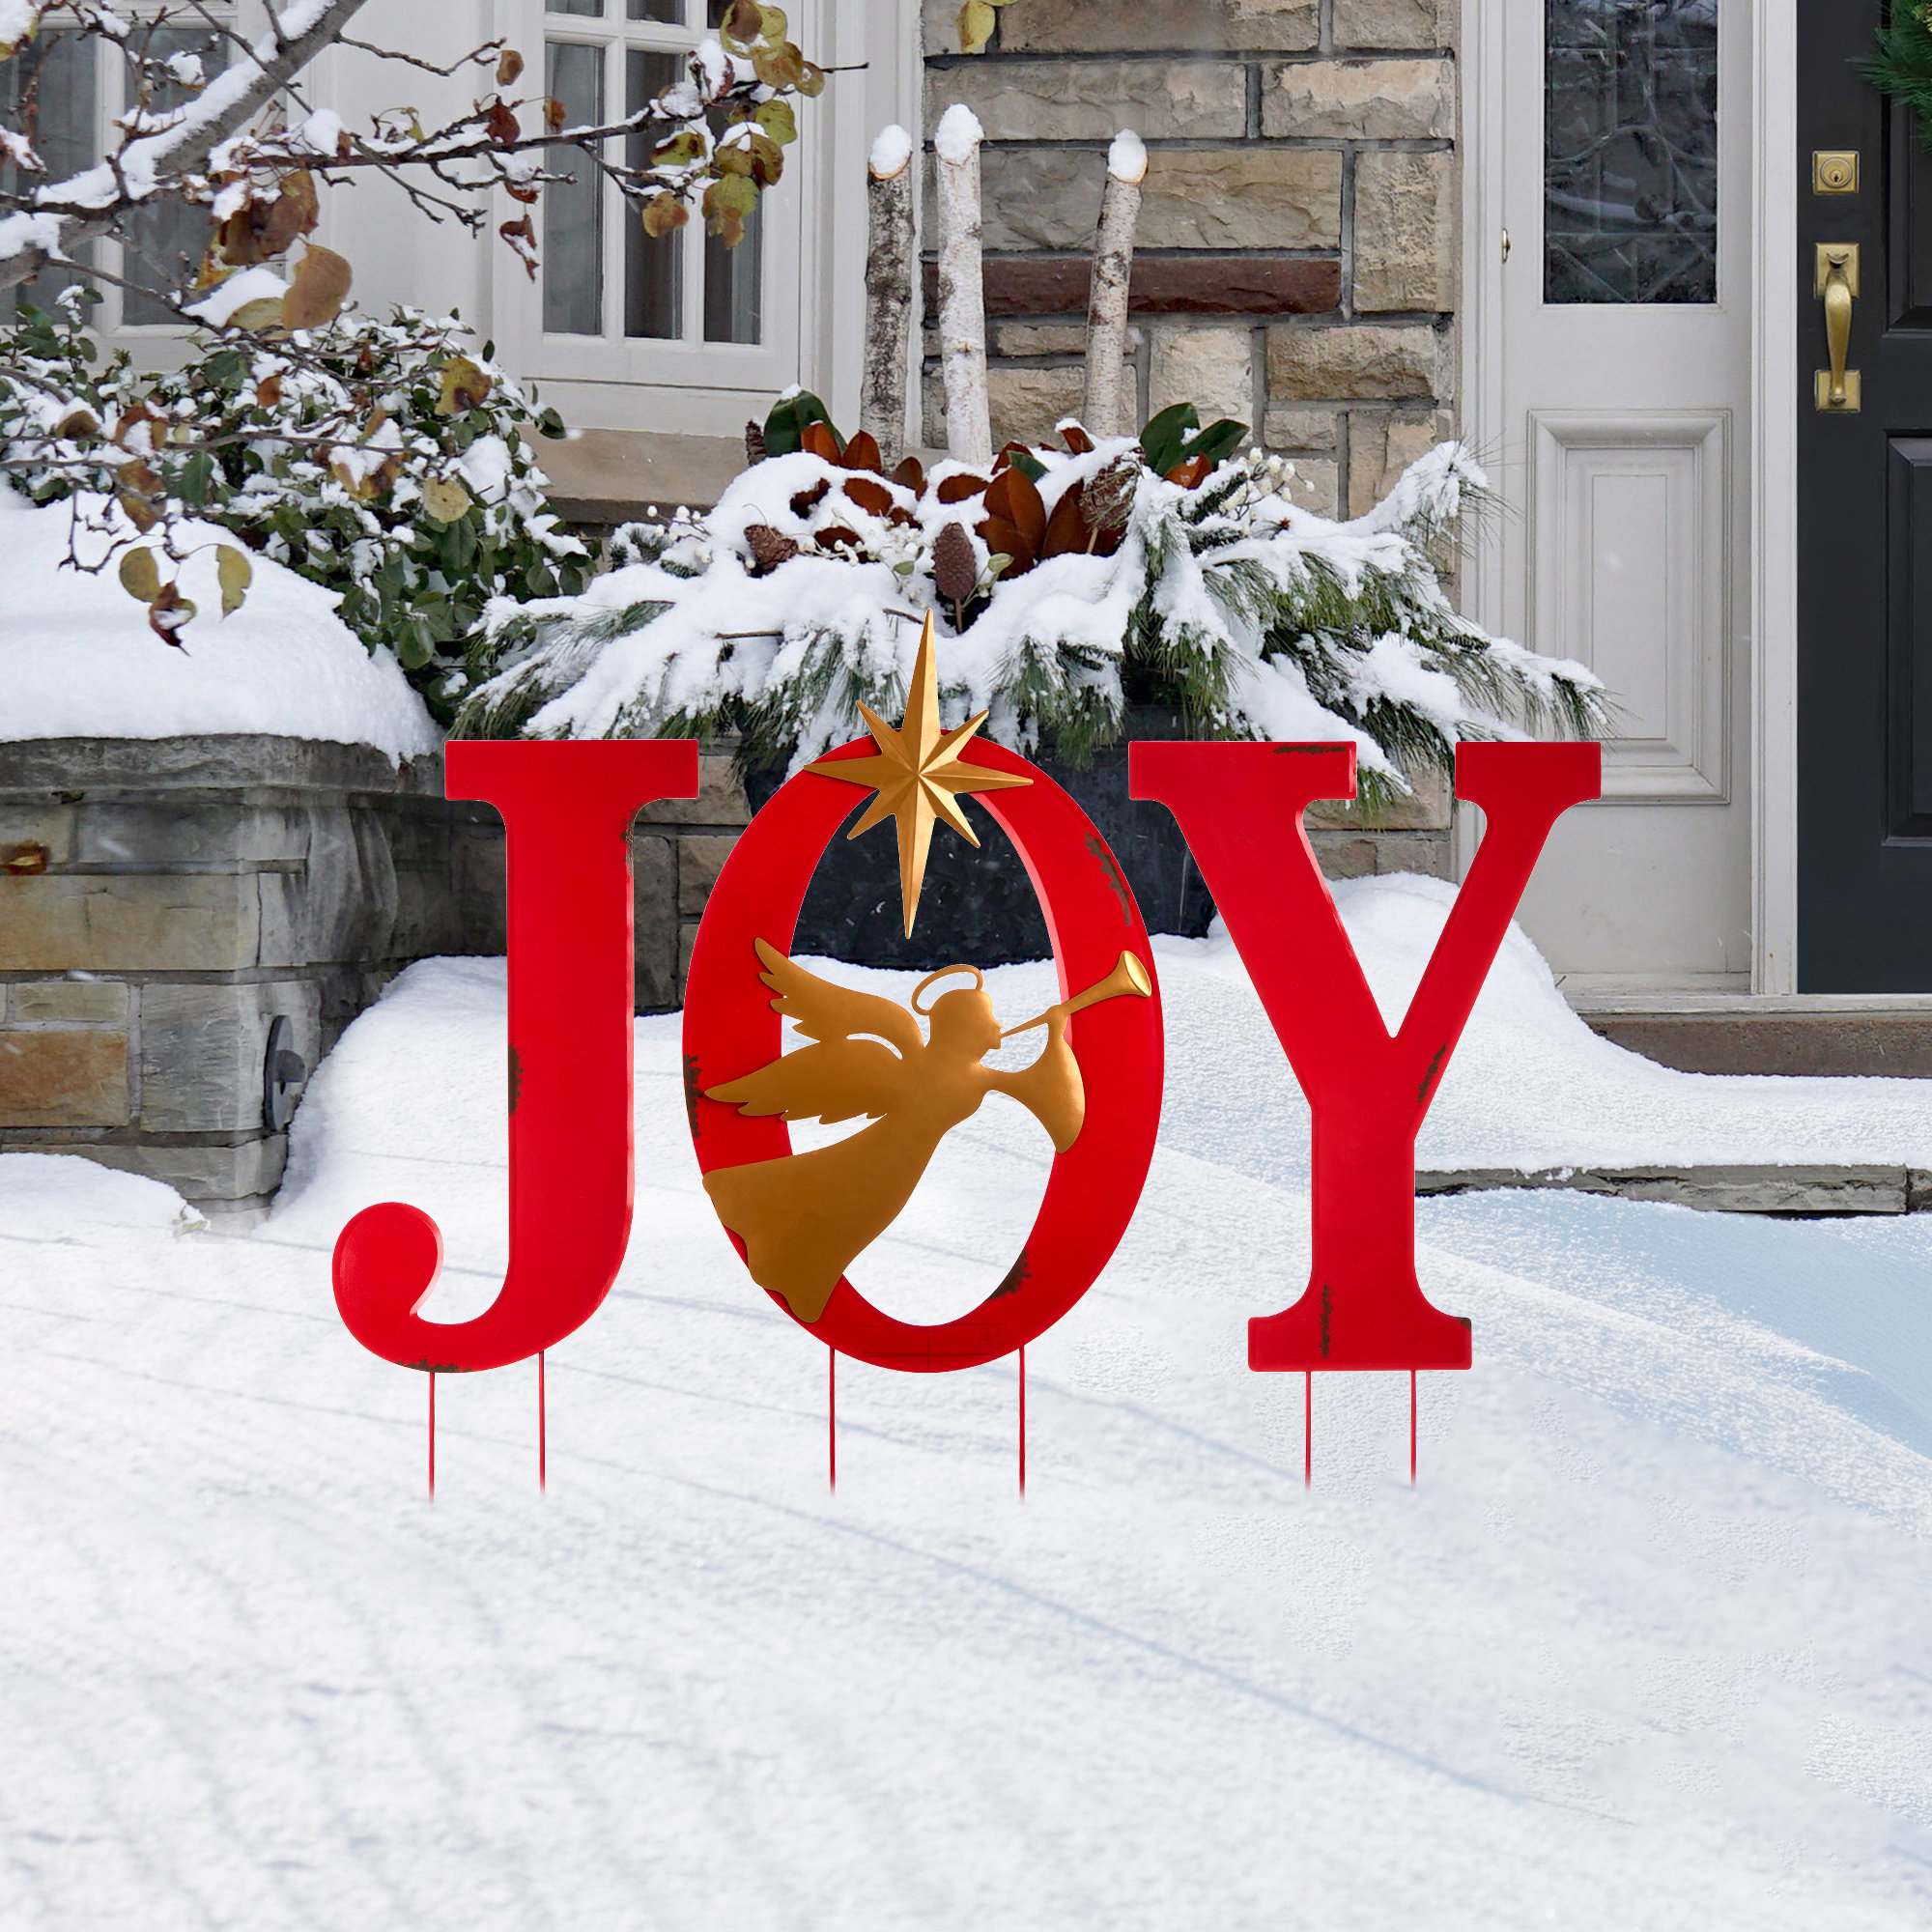 Joy Doormat, Winter Doormat, Joy Decor, Christmas Doormat, Front